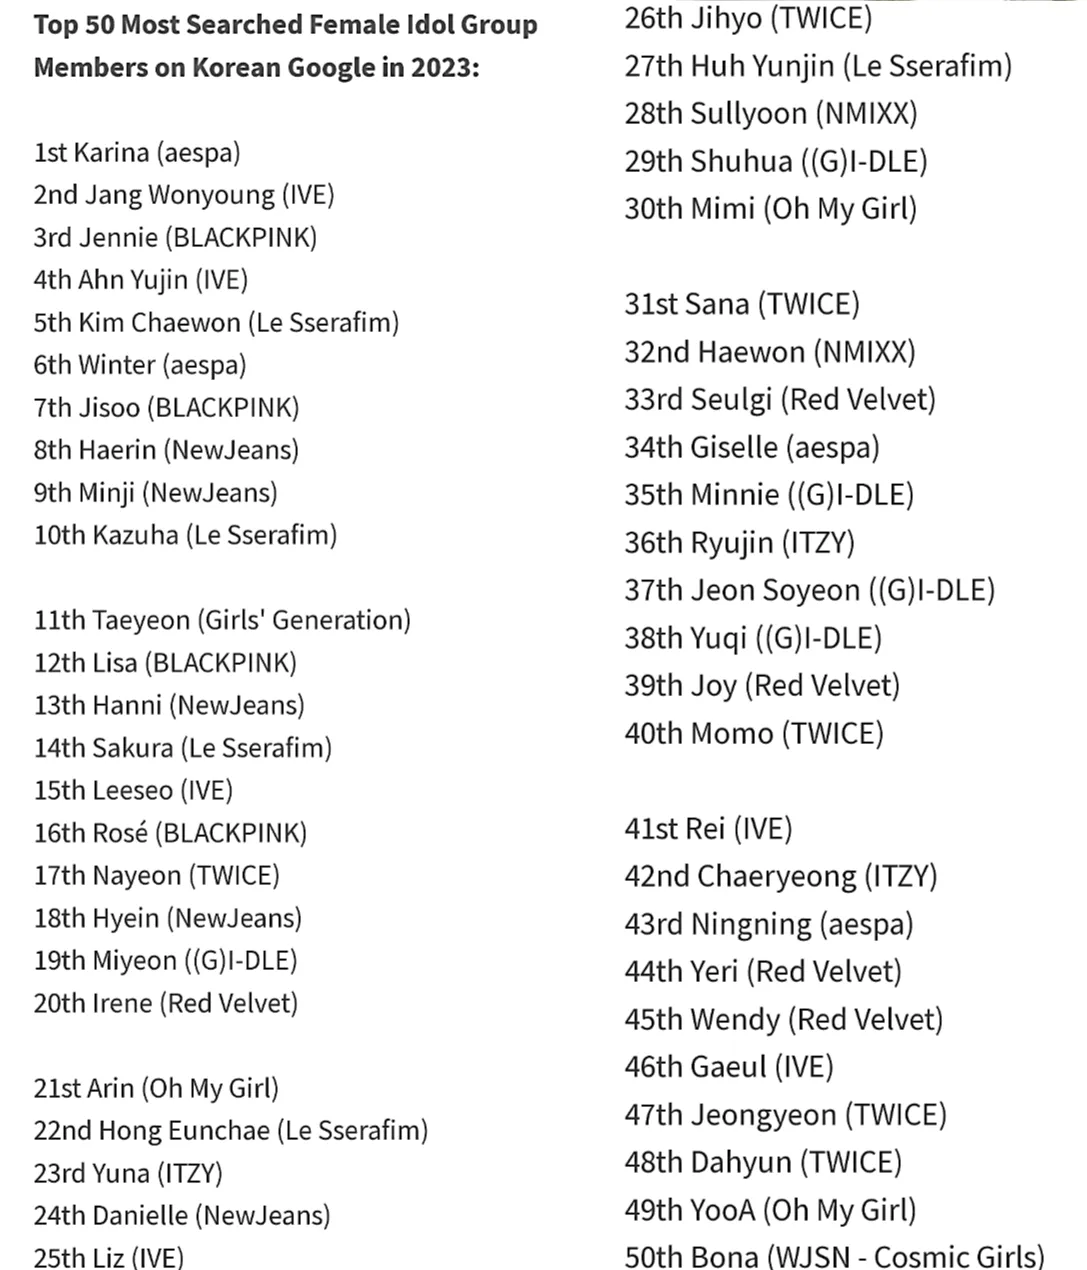 2023년 Google에서 가장 많이 검색된 아이돌 상위 50위 안에 모든 멤버가 포함된 9개 K-pop 그룹: BTS, aespa, SHINee 등!